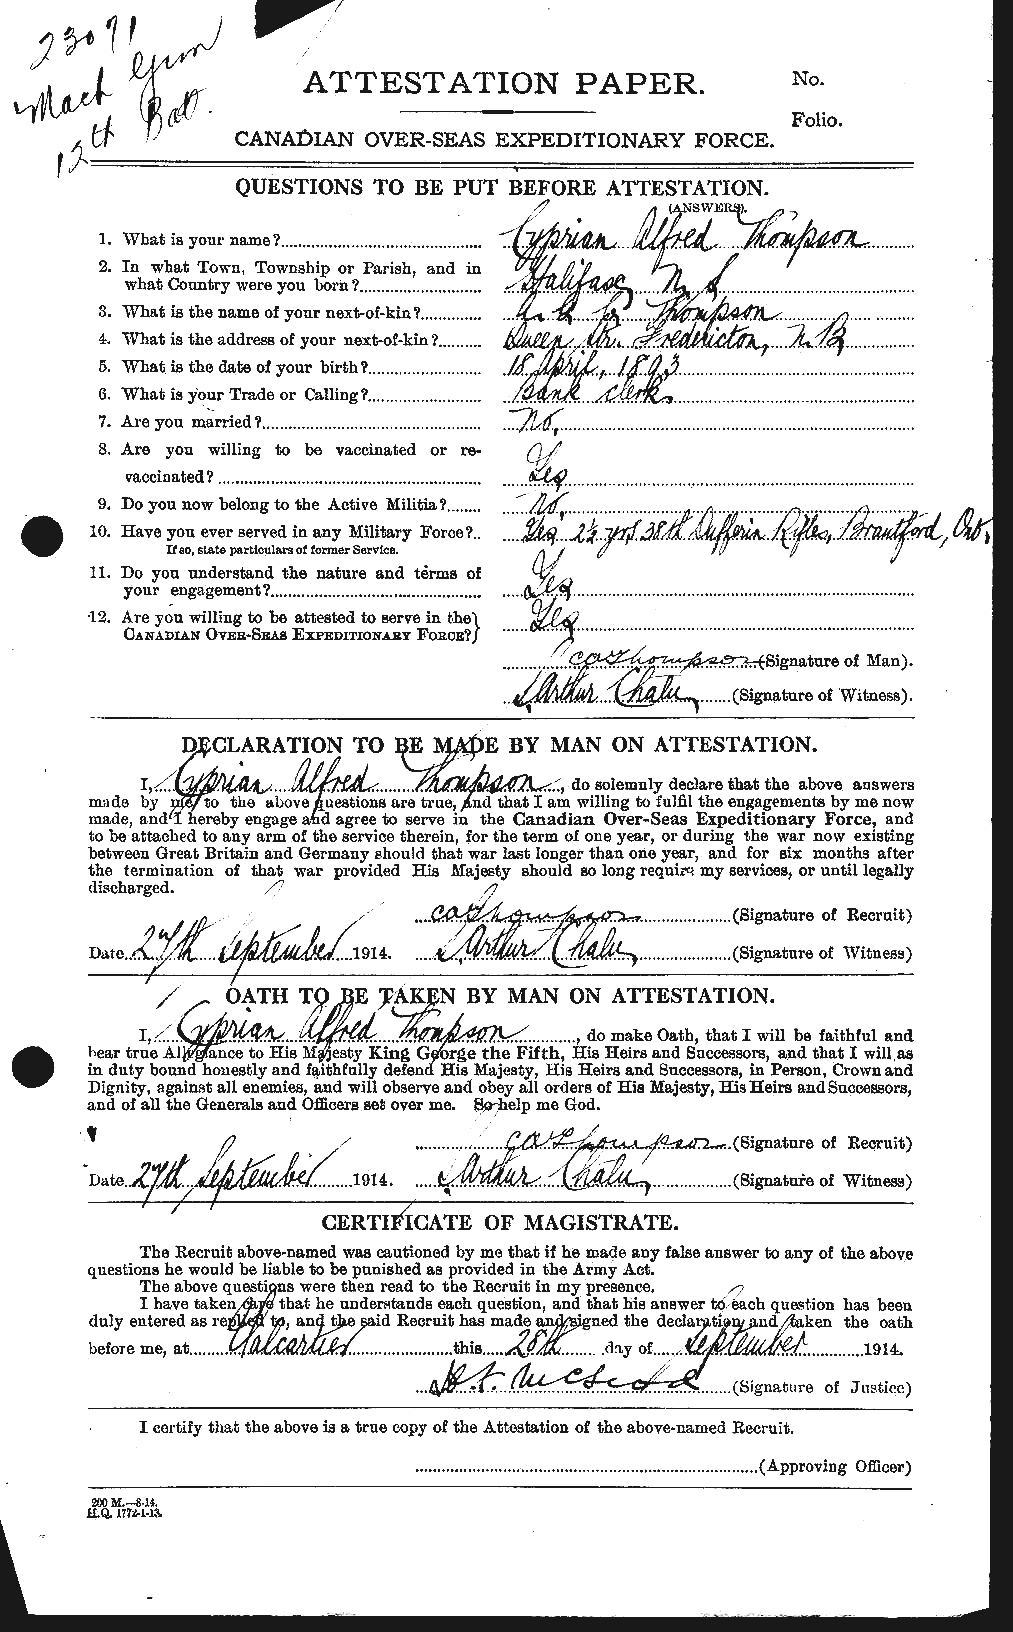 Dossiers du Personnel de la Première Guerre mondiale - CEC 630478a